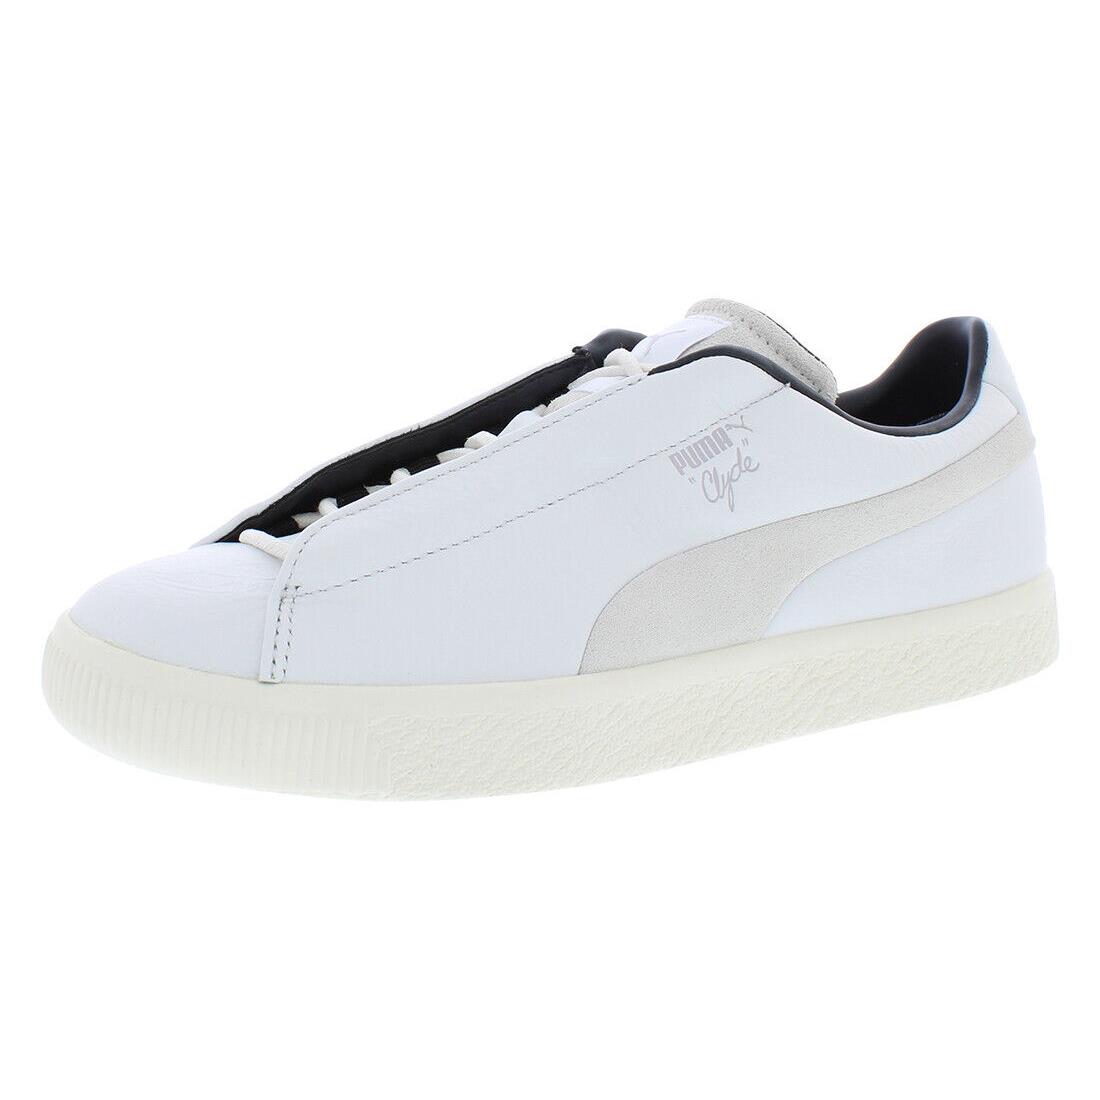 Puma Clyde Gtx Nanamica Mens Shoes - Puma White, Main: White